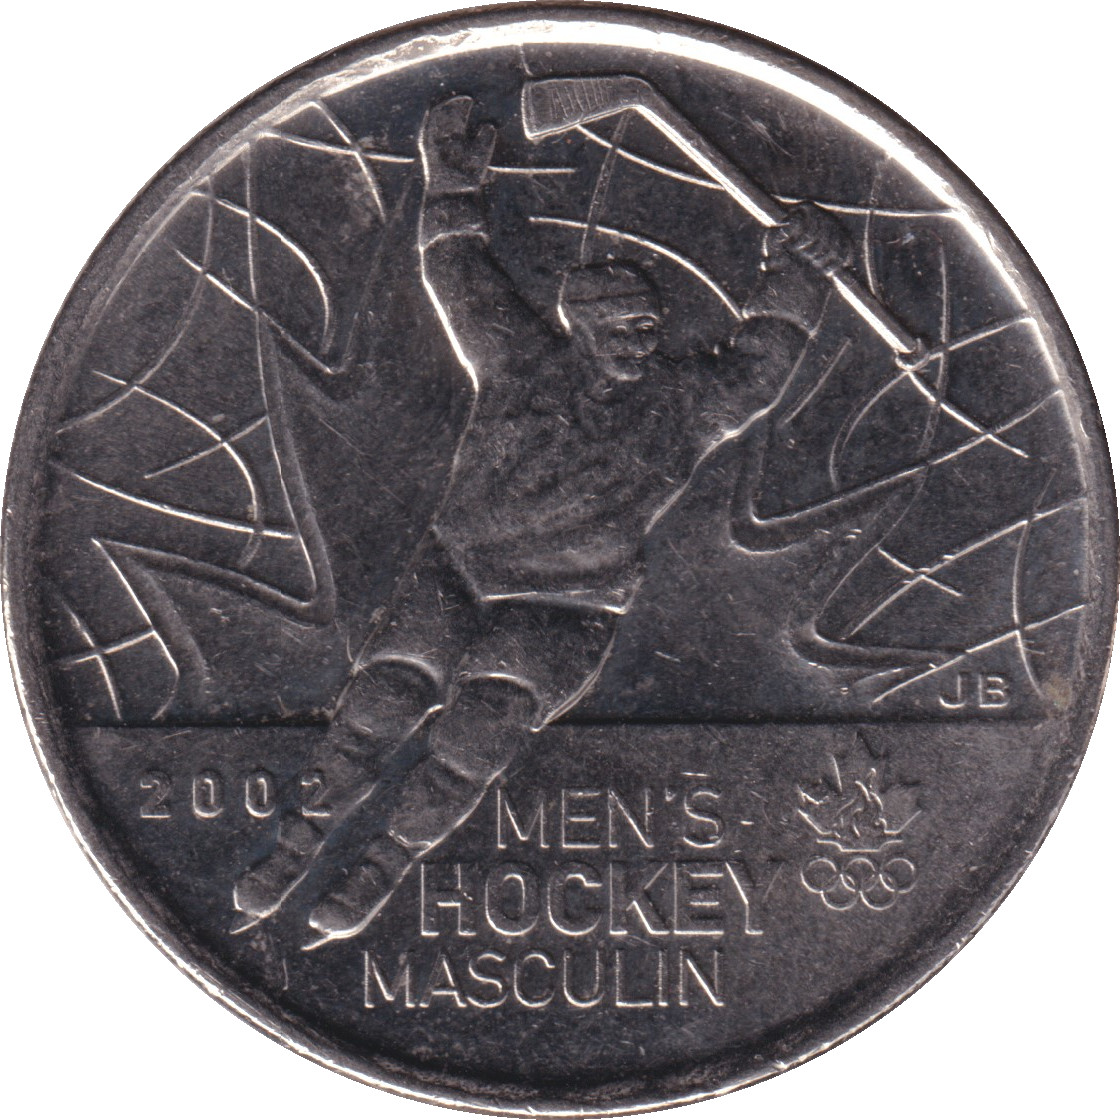 25 cents - Hockey masculin